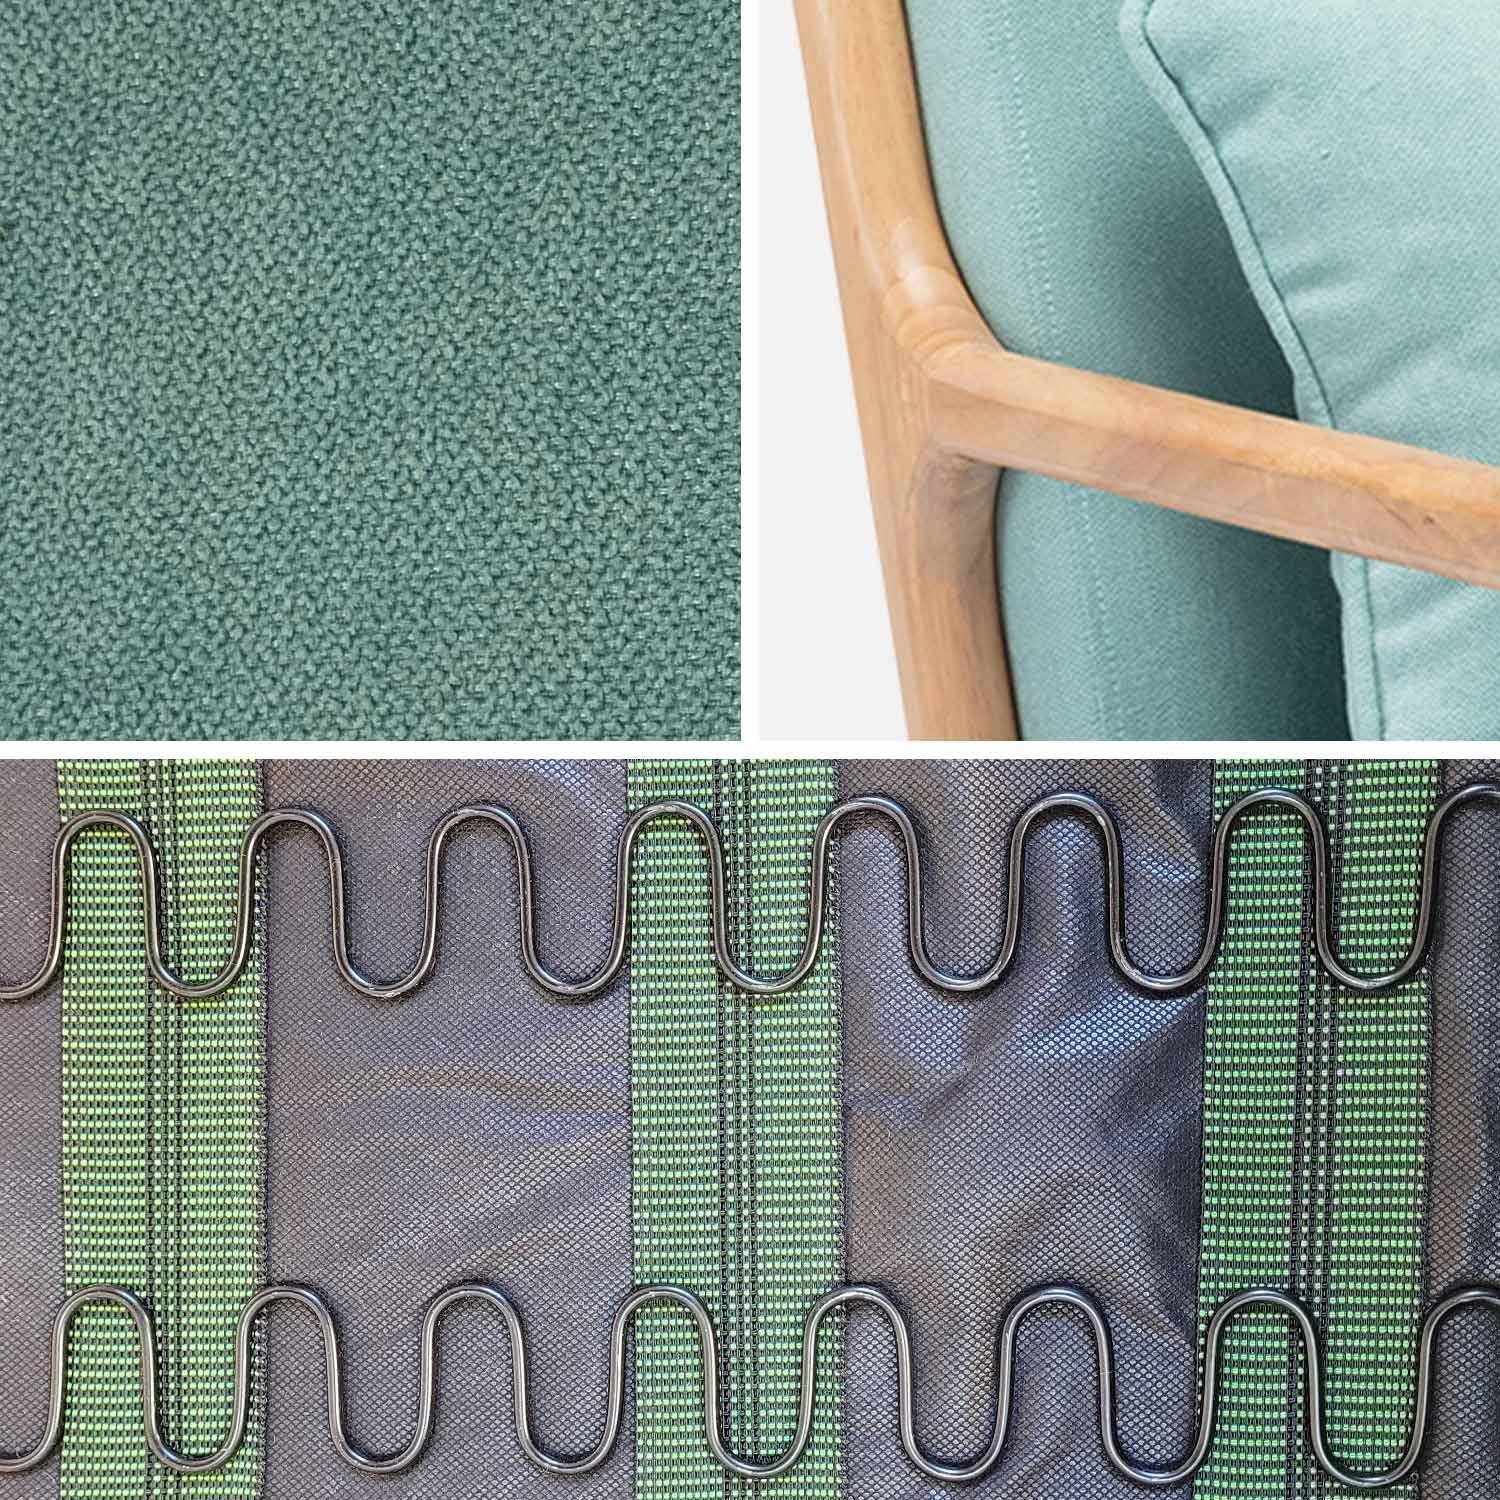 Poltrona de design em madeira e tecido, 1 assento reto fixo, pernas de bússola escandinavas, verde água Photo6